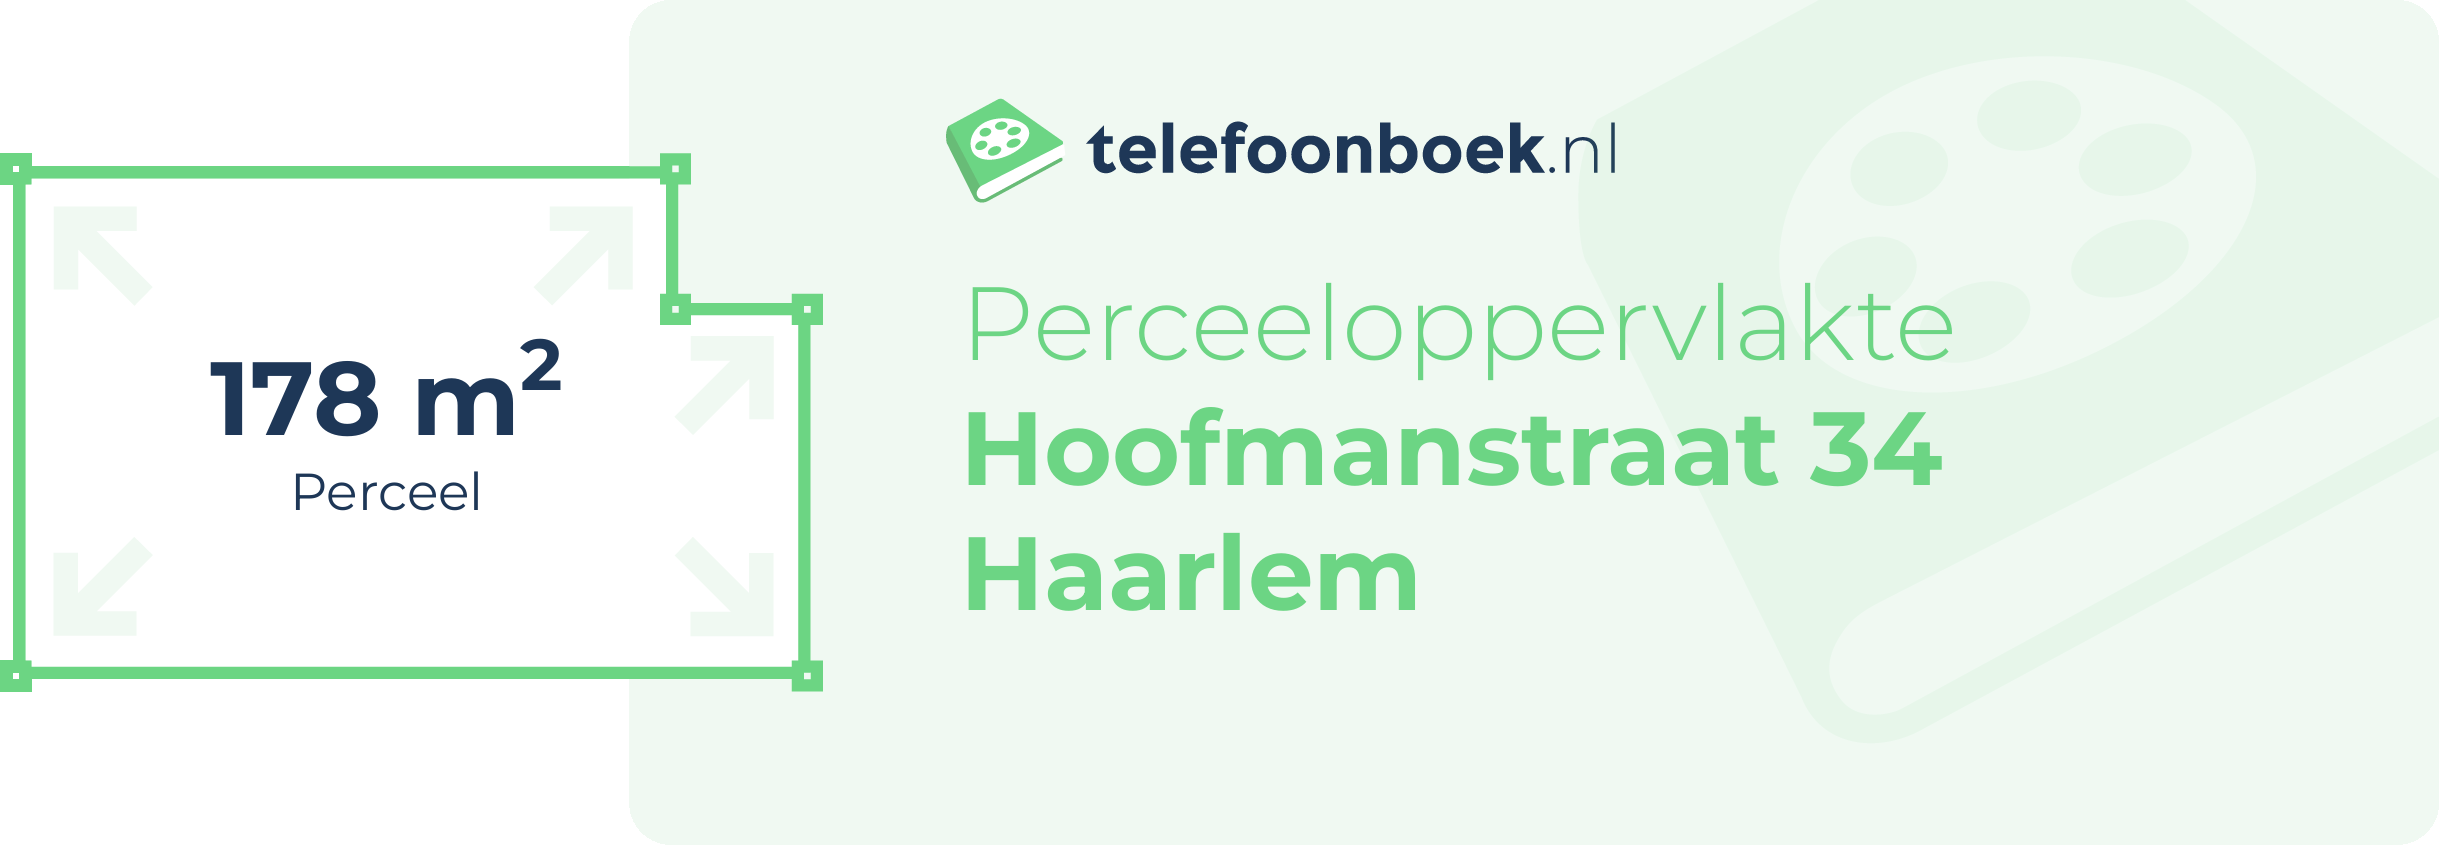 Perceeloppervlakte Hoofmanstraat 34 Haarlem